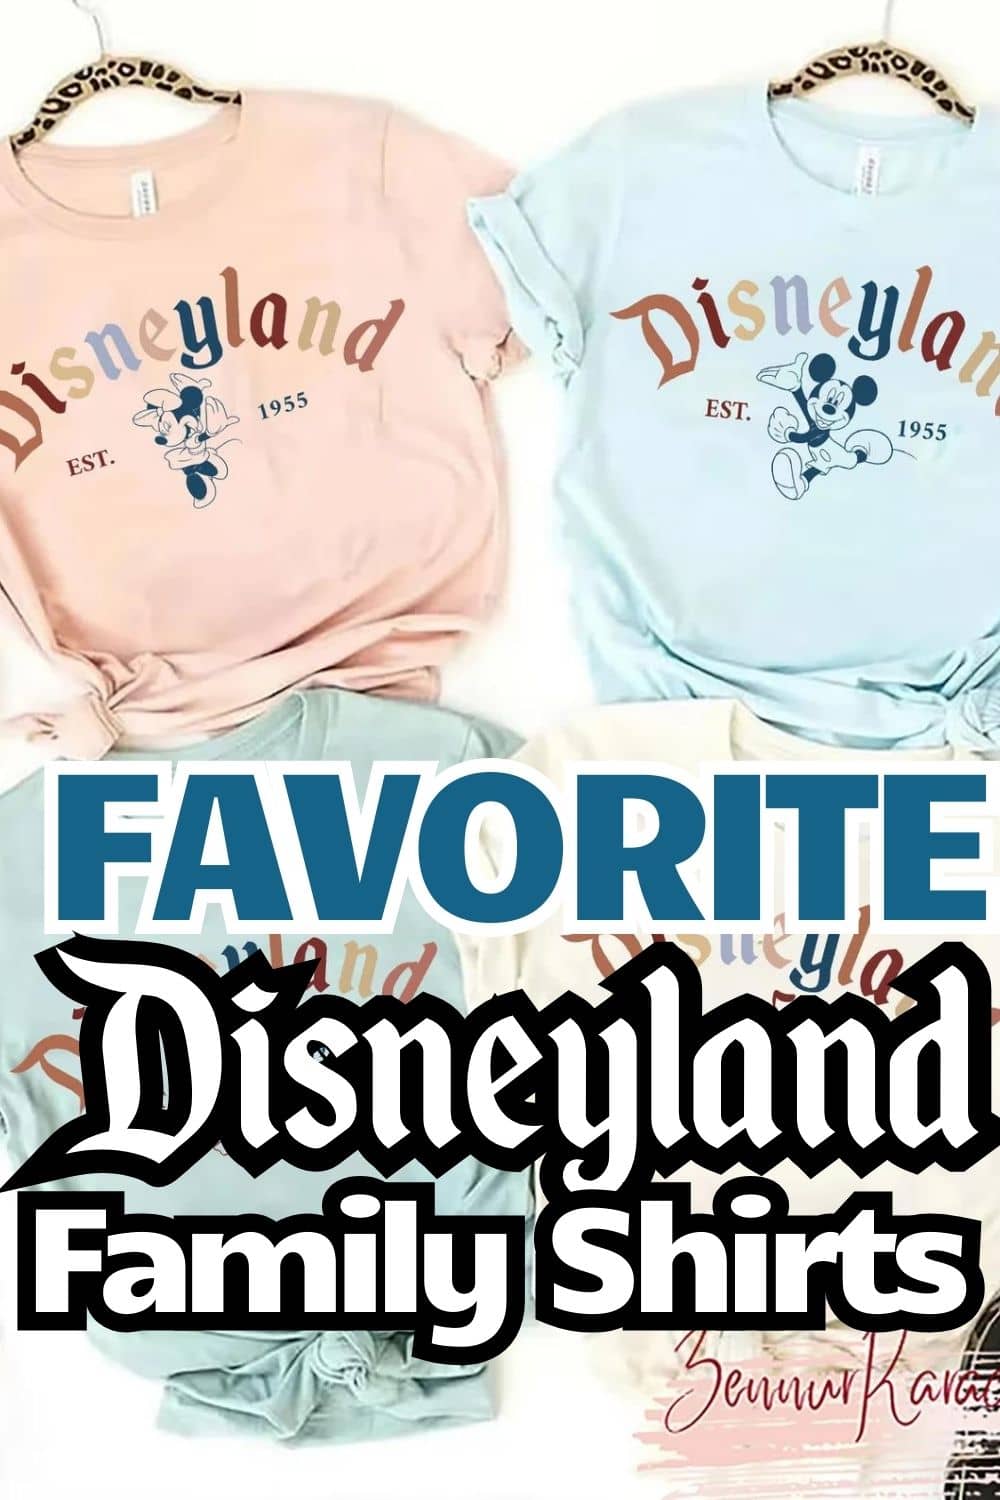 Favorite Matching Disneyland Shirts